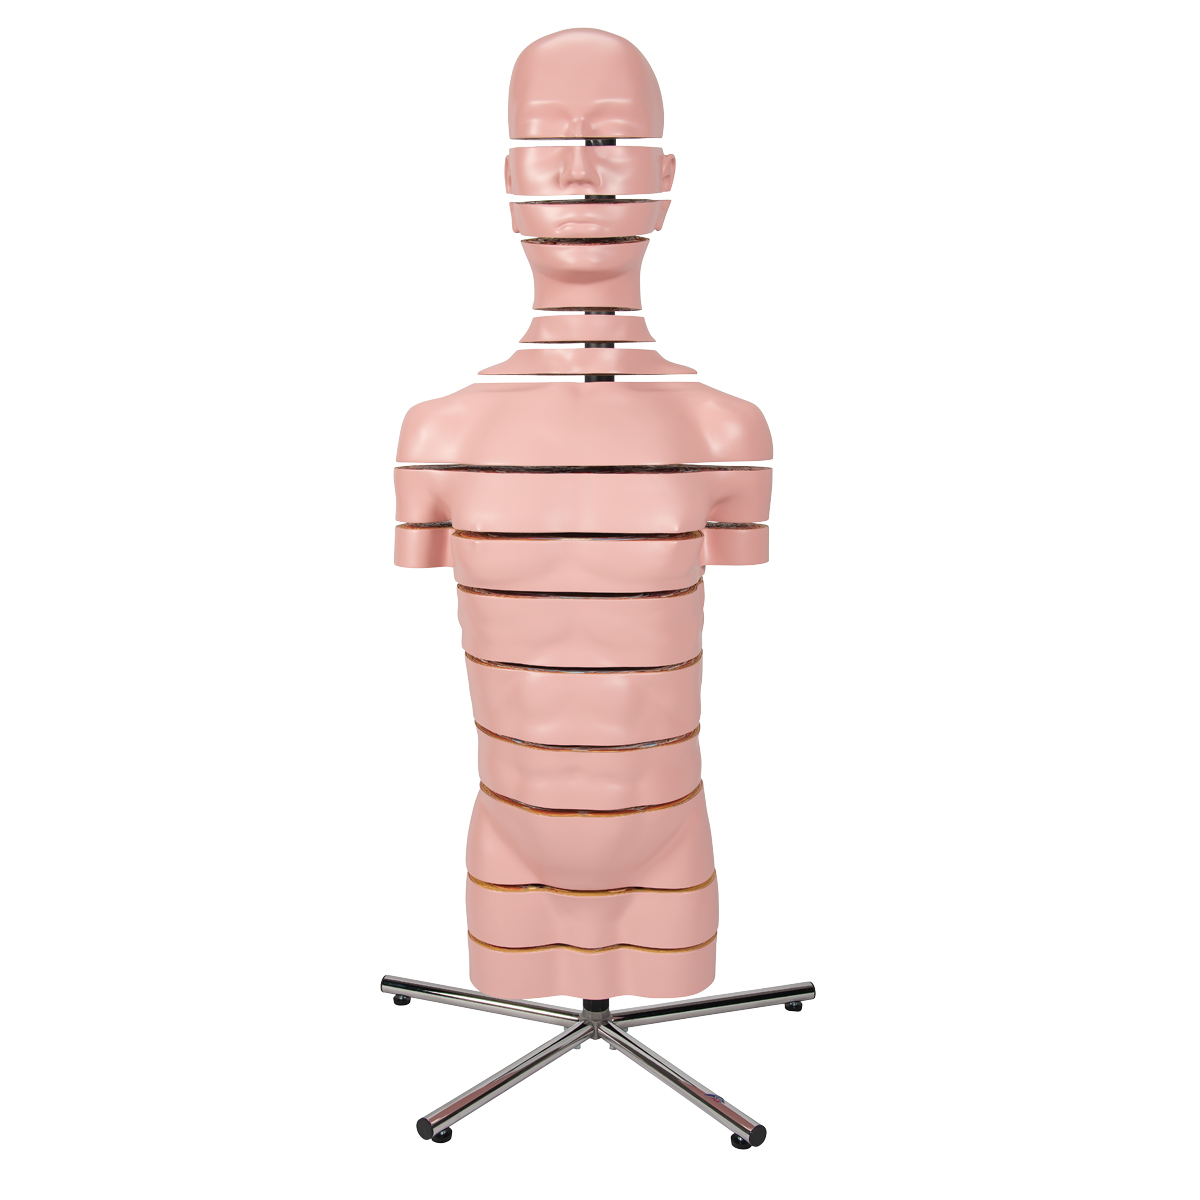 Disc human torso model